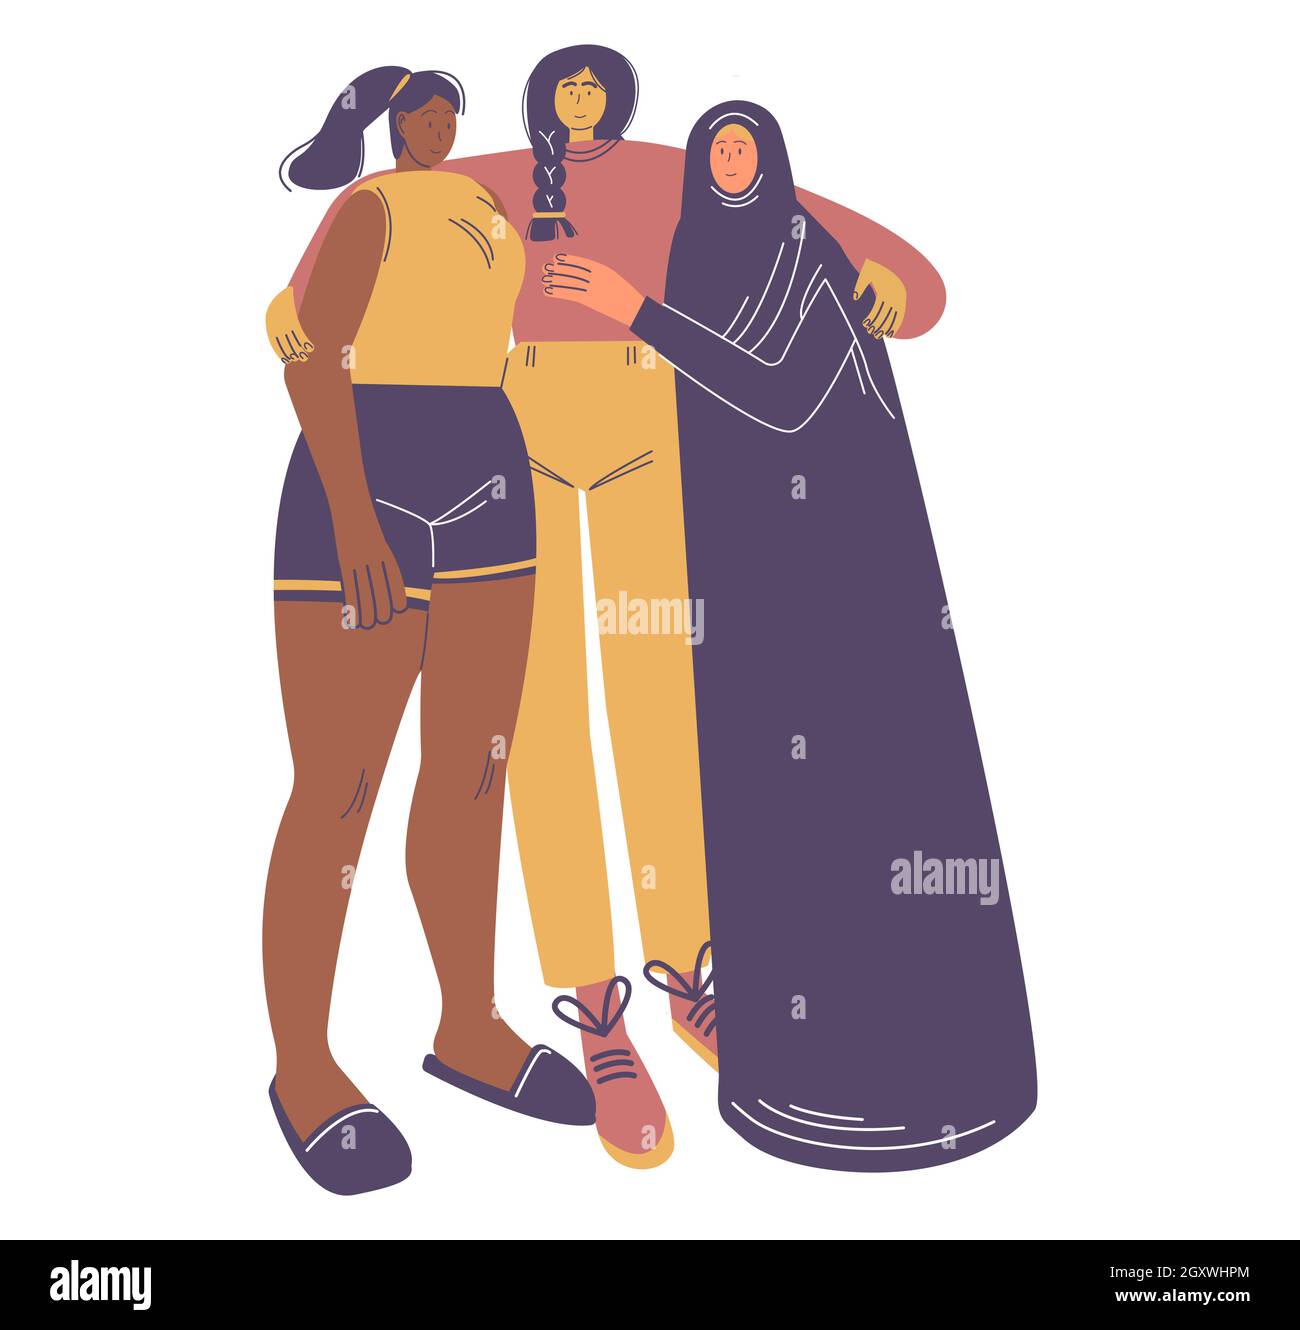 Joyeuses filles diverses qui s'embrasent ensemble.Journée internationale de la femme, 8 mars, féminisme, droits des femmes, illustration vectorielle. Illustration de Vecteur